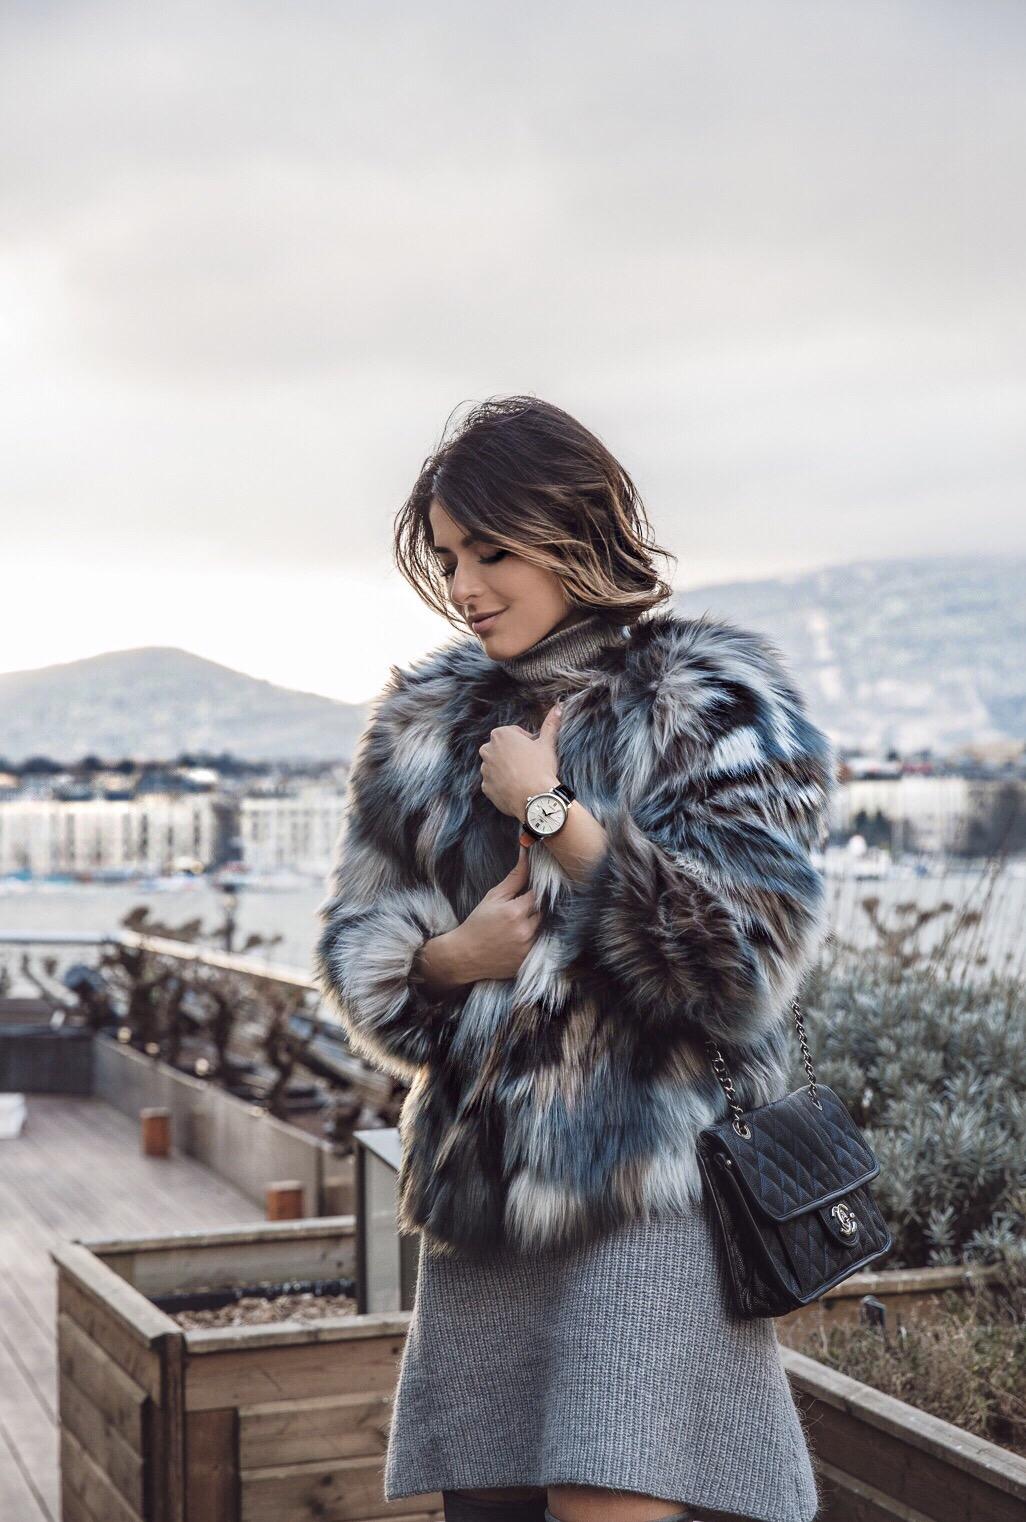 Travel Guide Geneva - Lake Geneva, Faux-Fur Coat | The Girl From Panama Pam Hetlinger